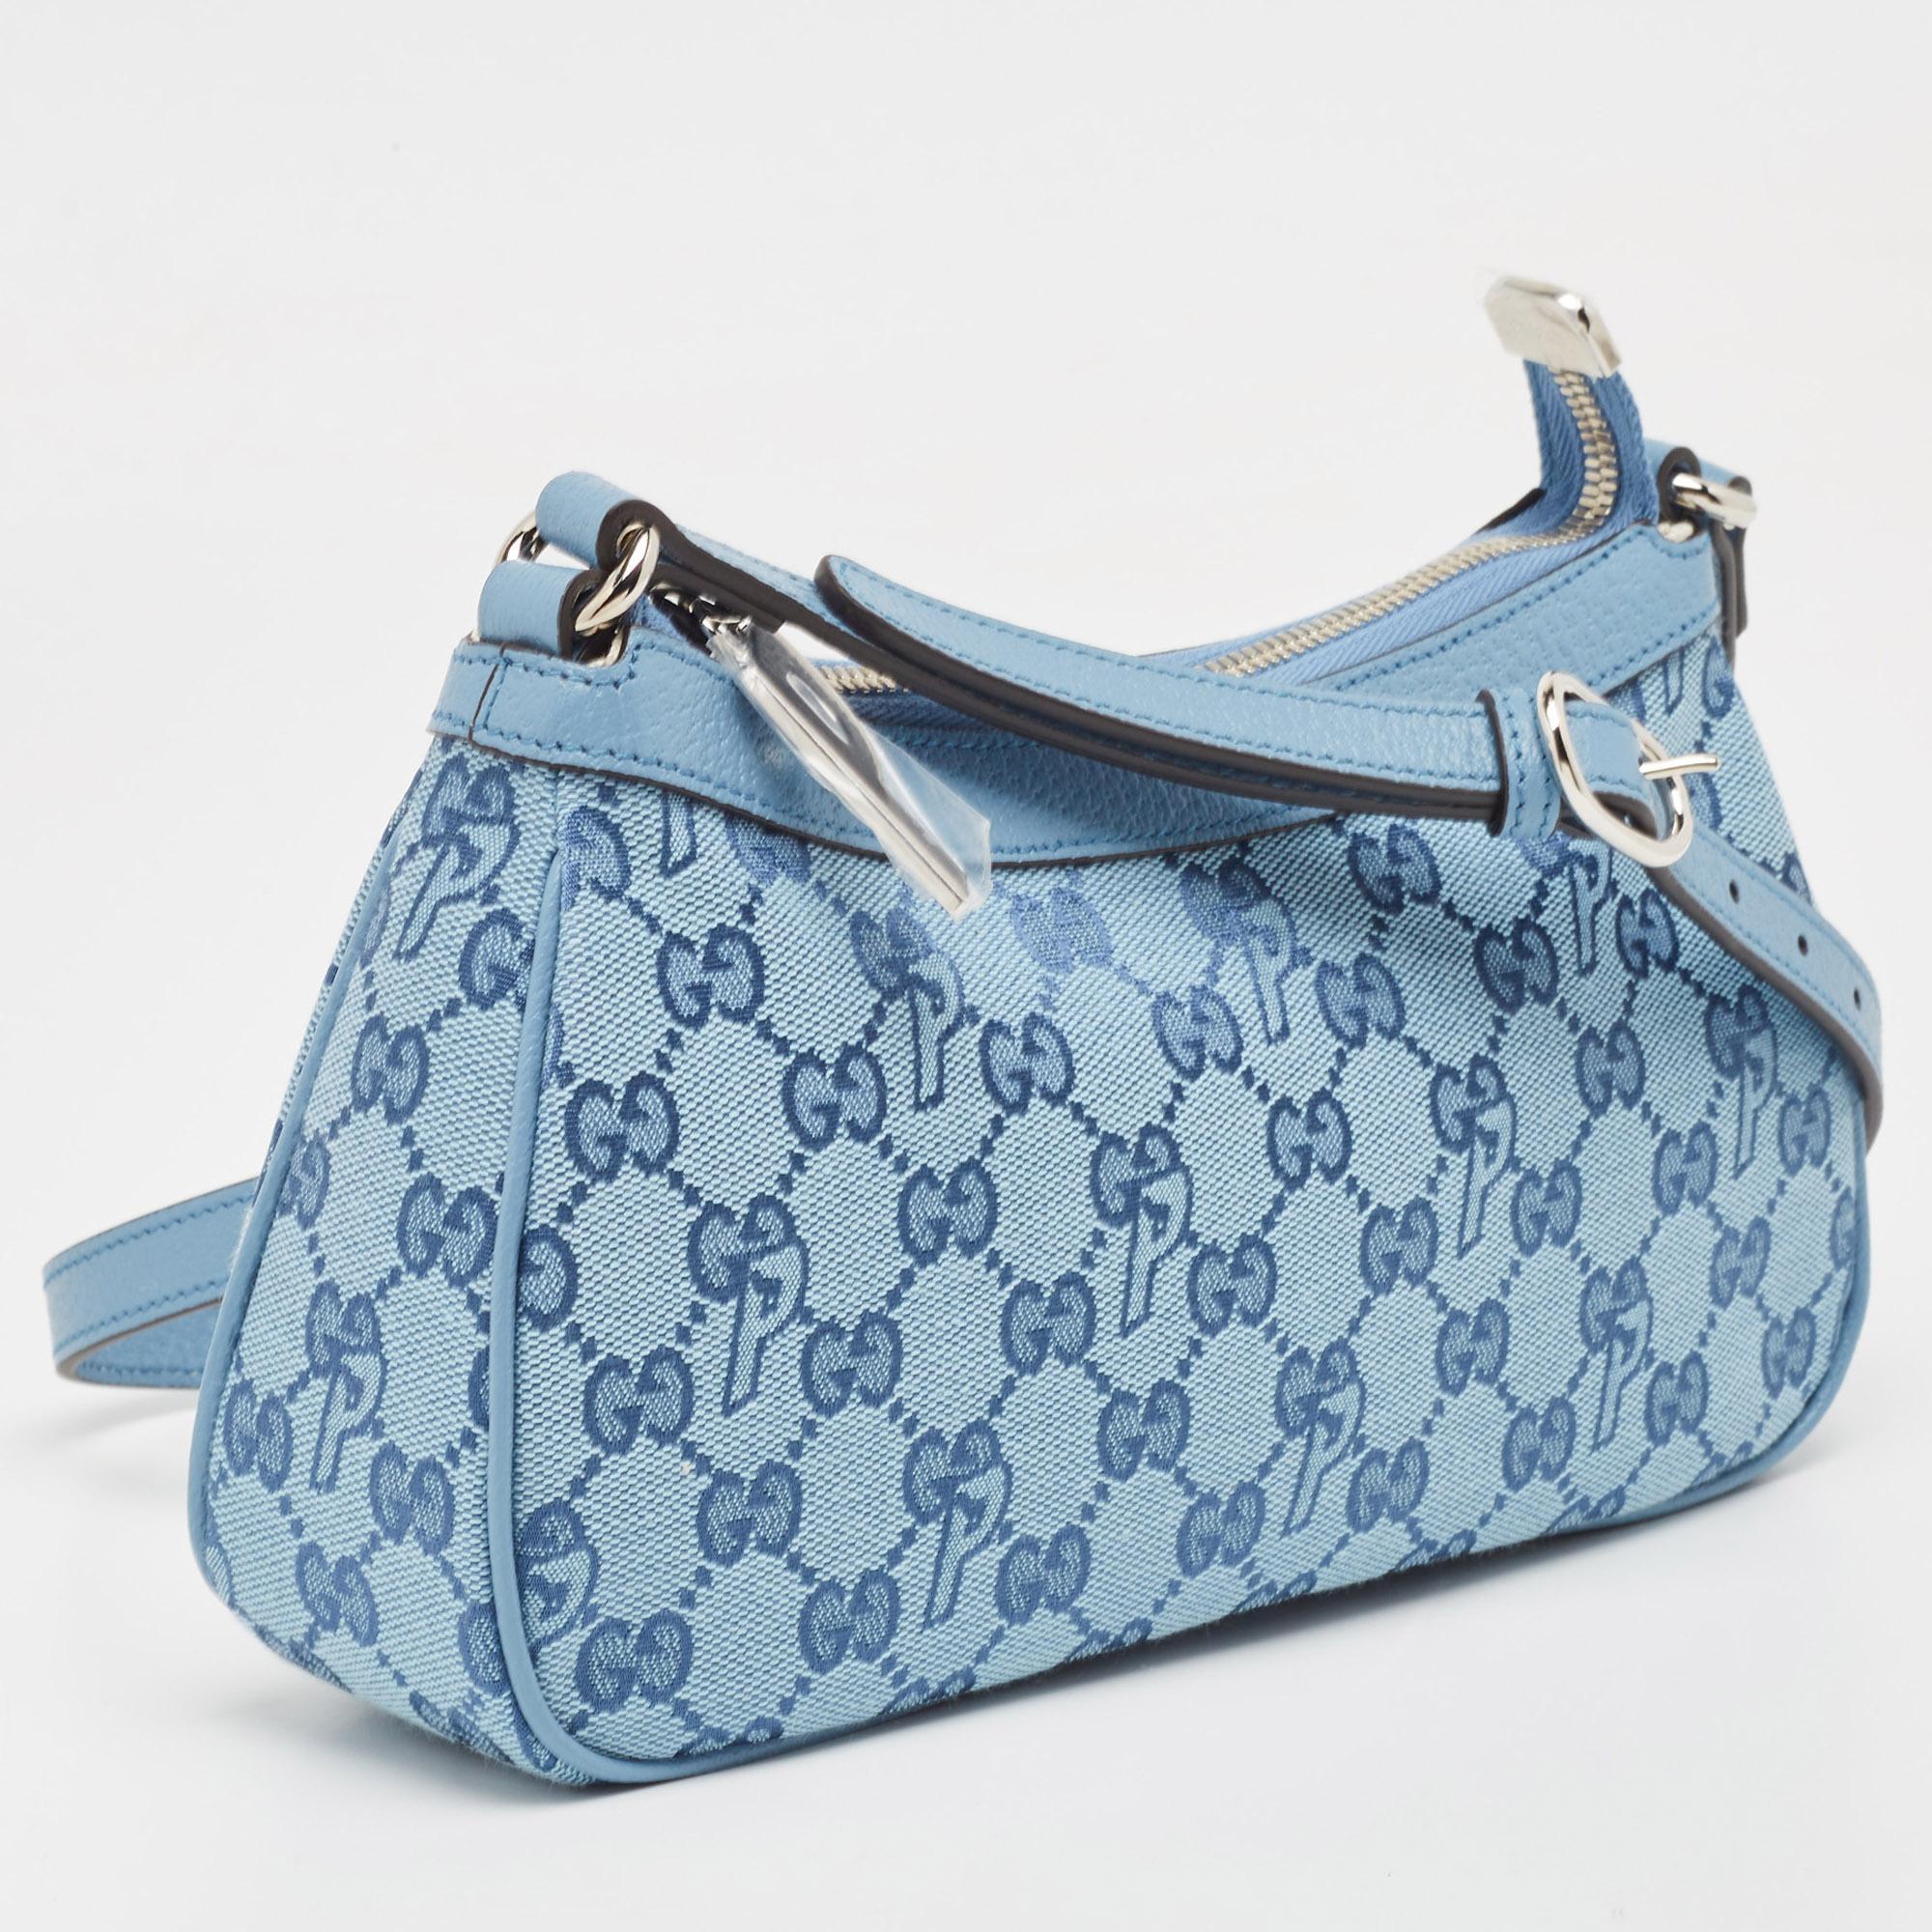 Die Gucci x Palace Tasche verkörpert Eleganz und urbanes Flair. Sie ist aus luxuriösem GG-P Canvas gefertigt und trägt das ikonische Palace-Logo, das einen modernen Stil ausstrahlt. Ihr kompaktes Design ist praktisch, ohne auf Raffinesse zu